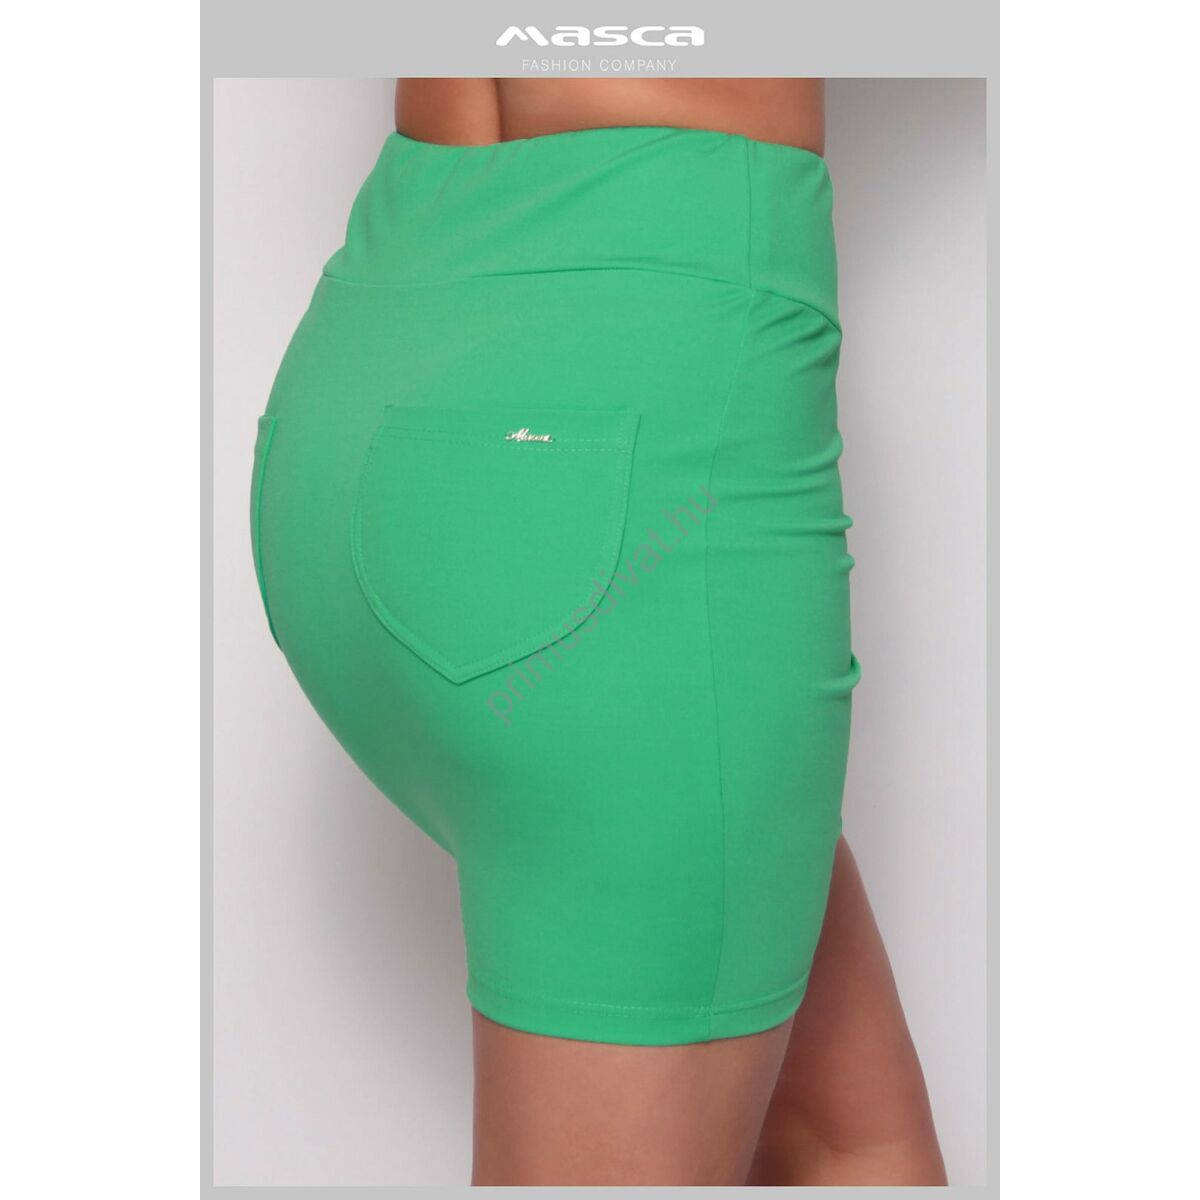 Masca Fashion széles gumipántos magas derekú szűk rugalmas zöld miniszoknya, hátán zsebekkel